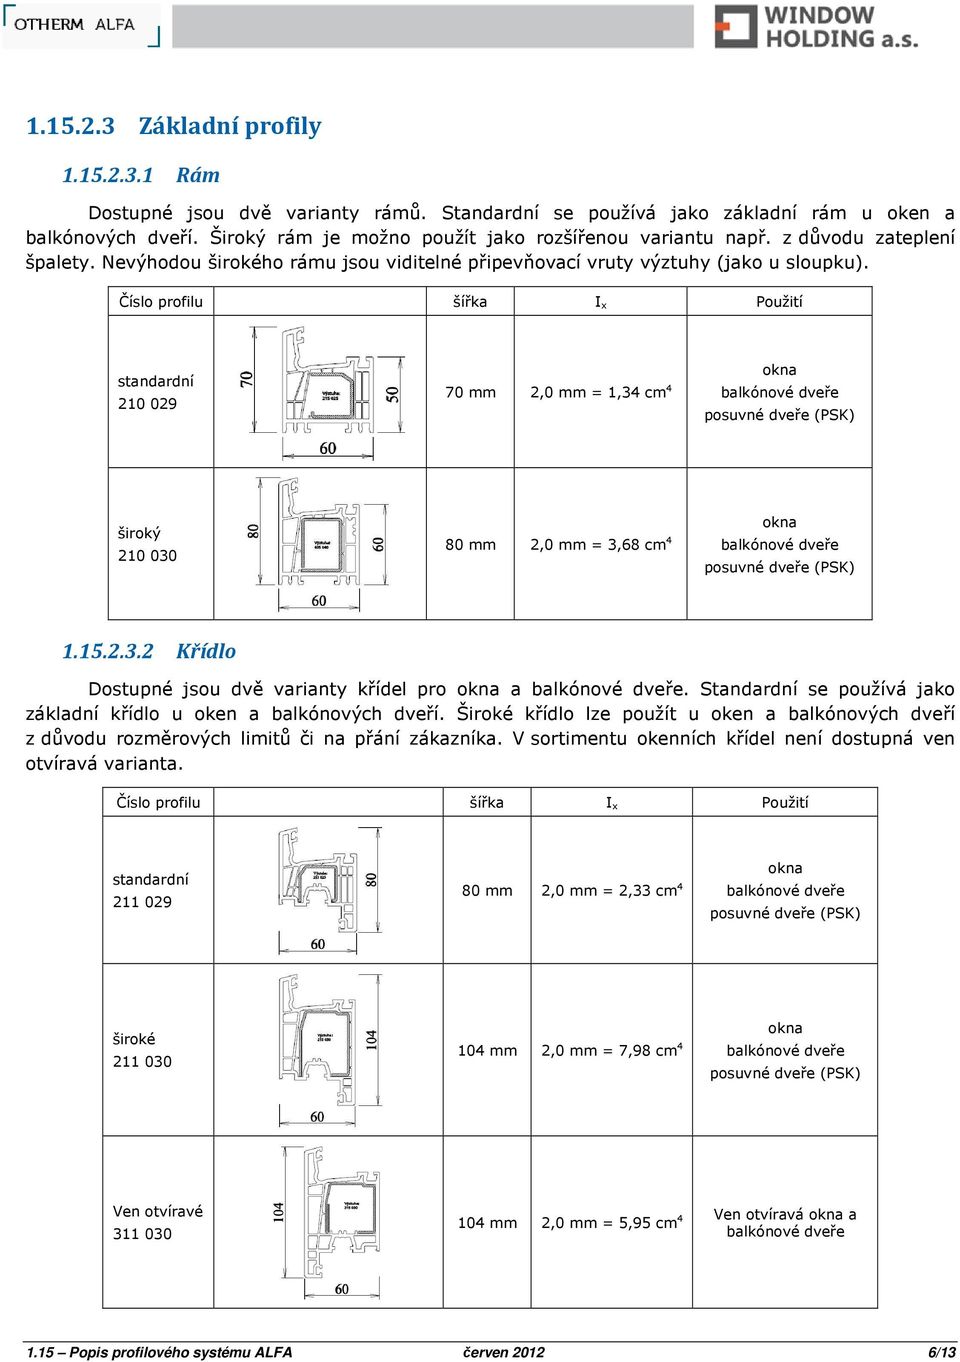 Číslo profilu šířka I x Použití standardní 210 029 70 mm 2,0 mm = 1,34 cm 4 balkónové dveře okna posuvné dveře (PSK) široký 210 030 80 mm 2,0 mm = 3,68 cm 4 balkónové dveře okna posuvné dveře (PSK) 1.